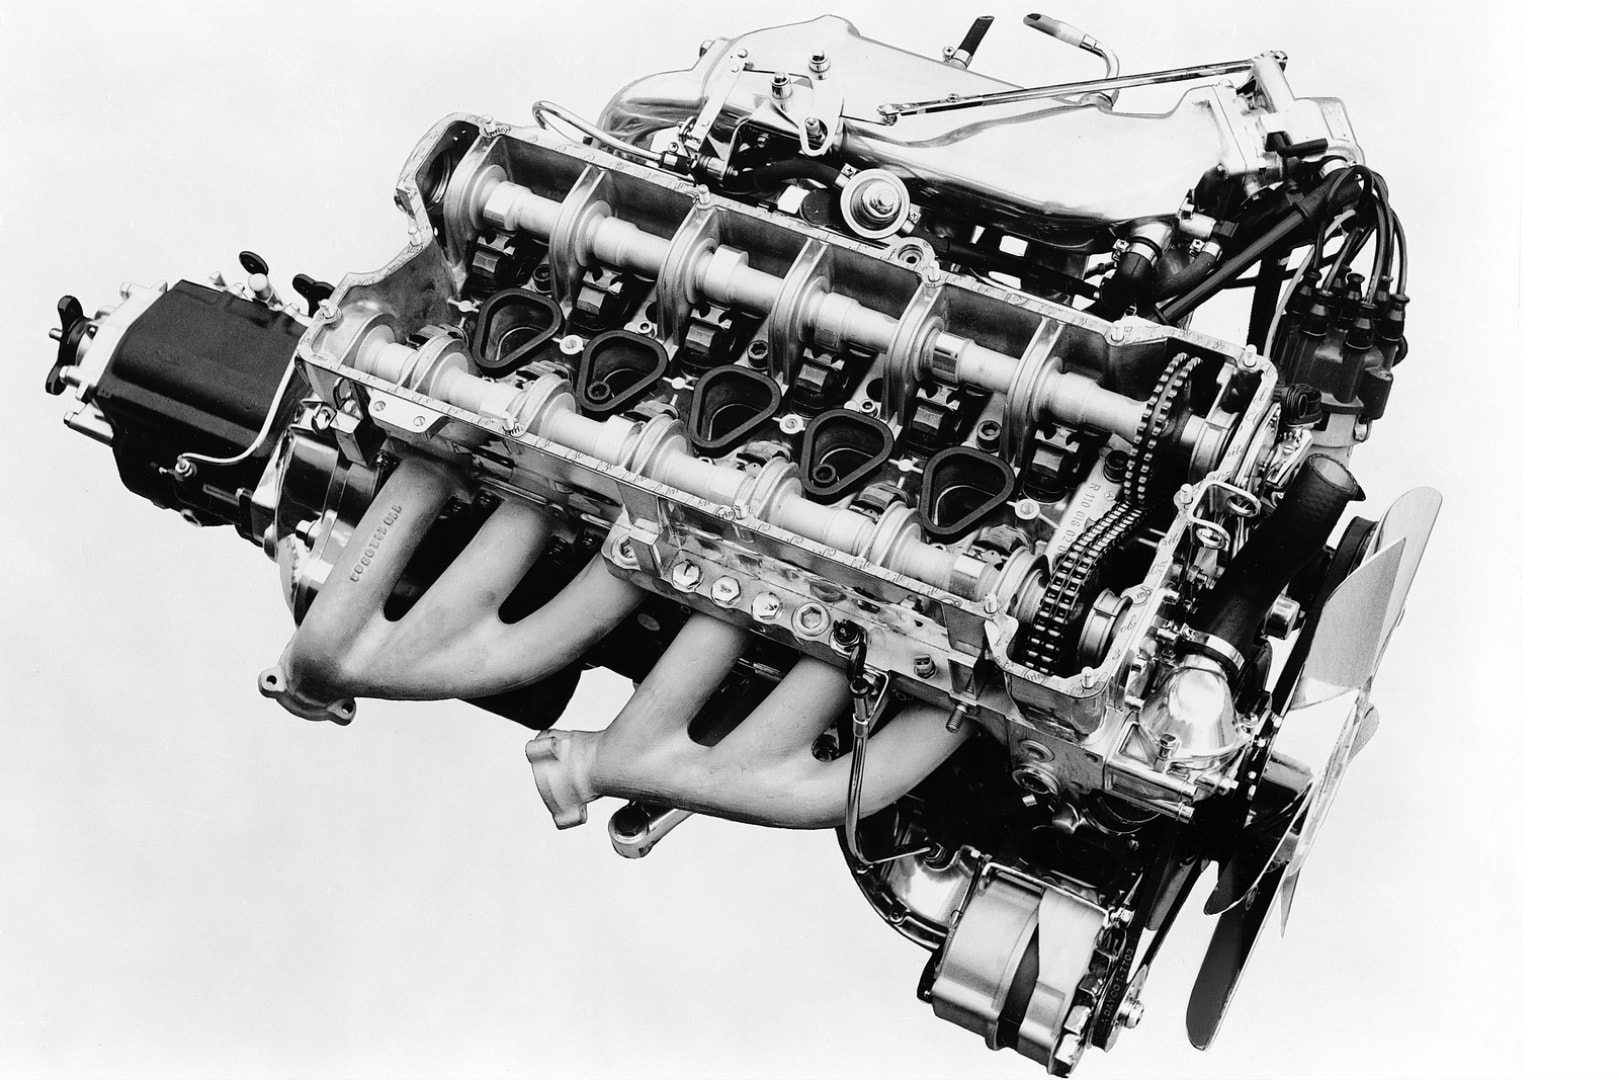 Mercedes inline 6 engines